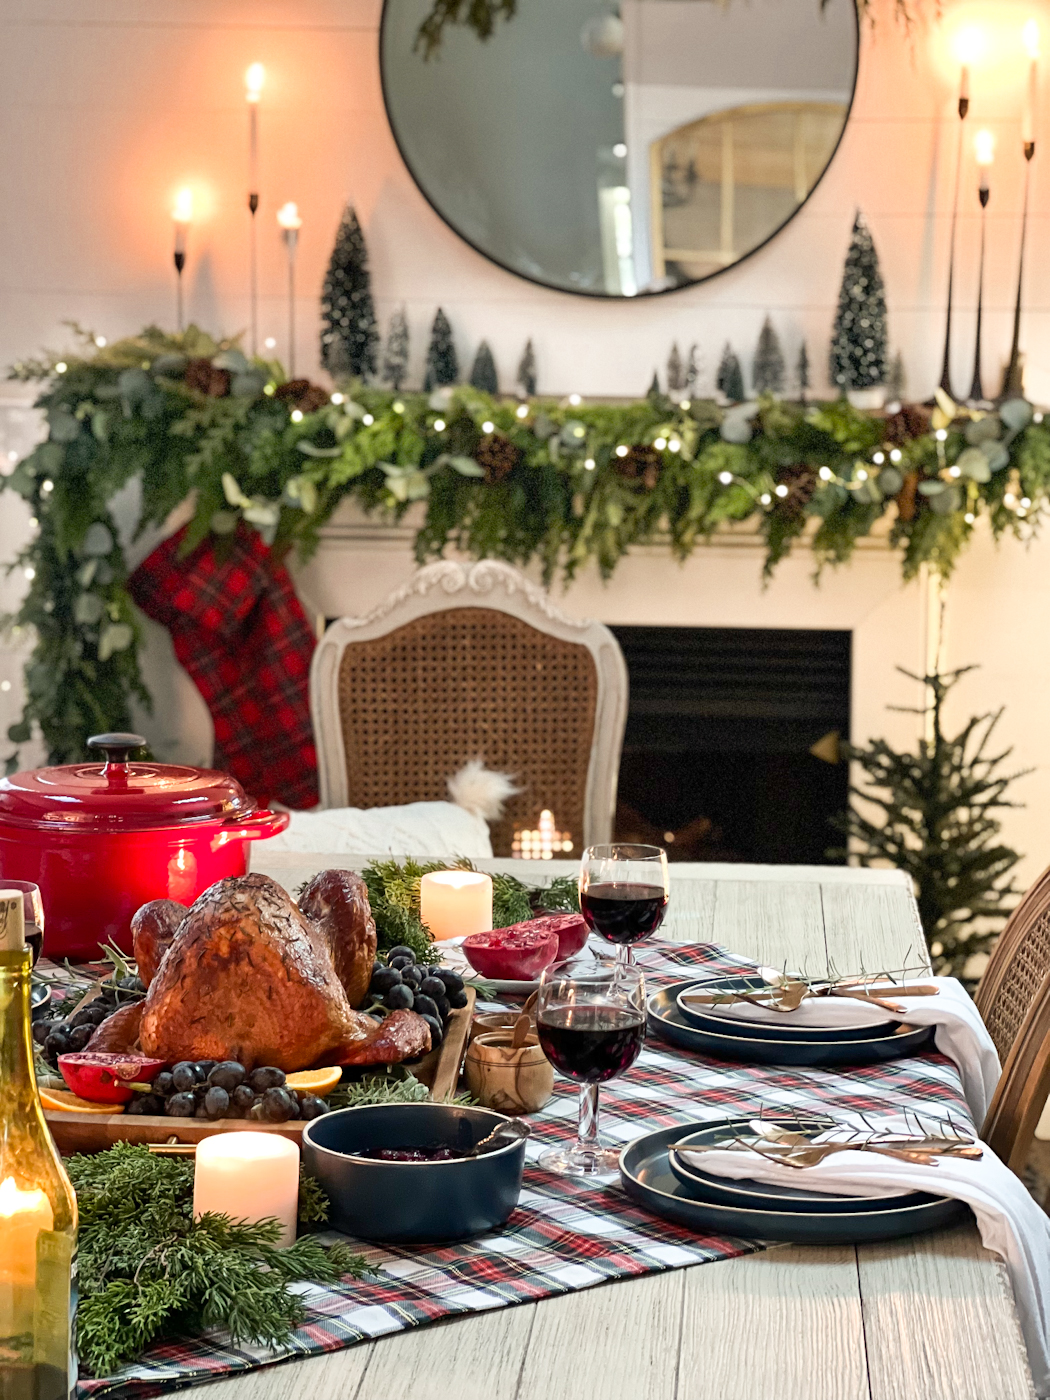 turkey on Christmas table